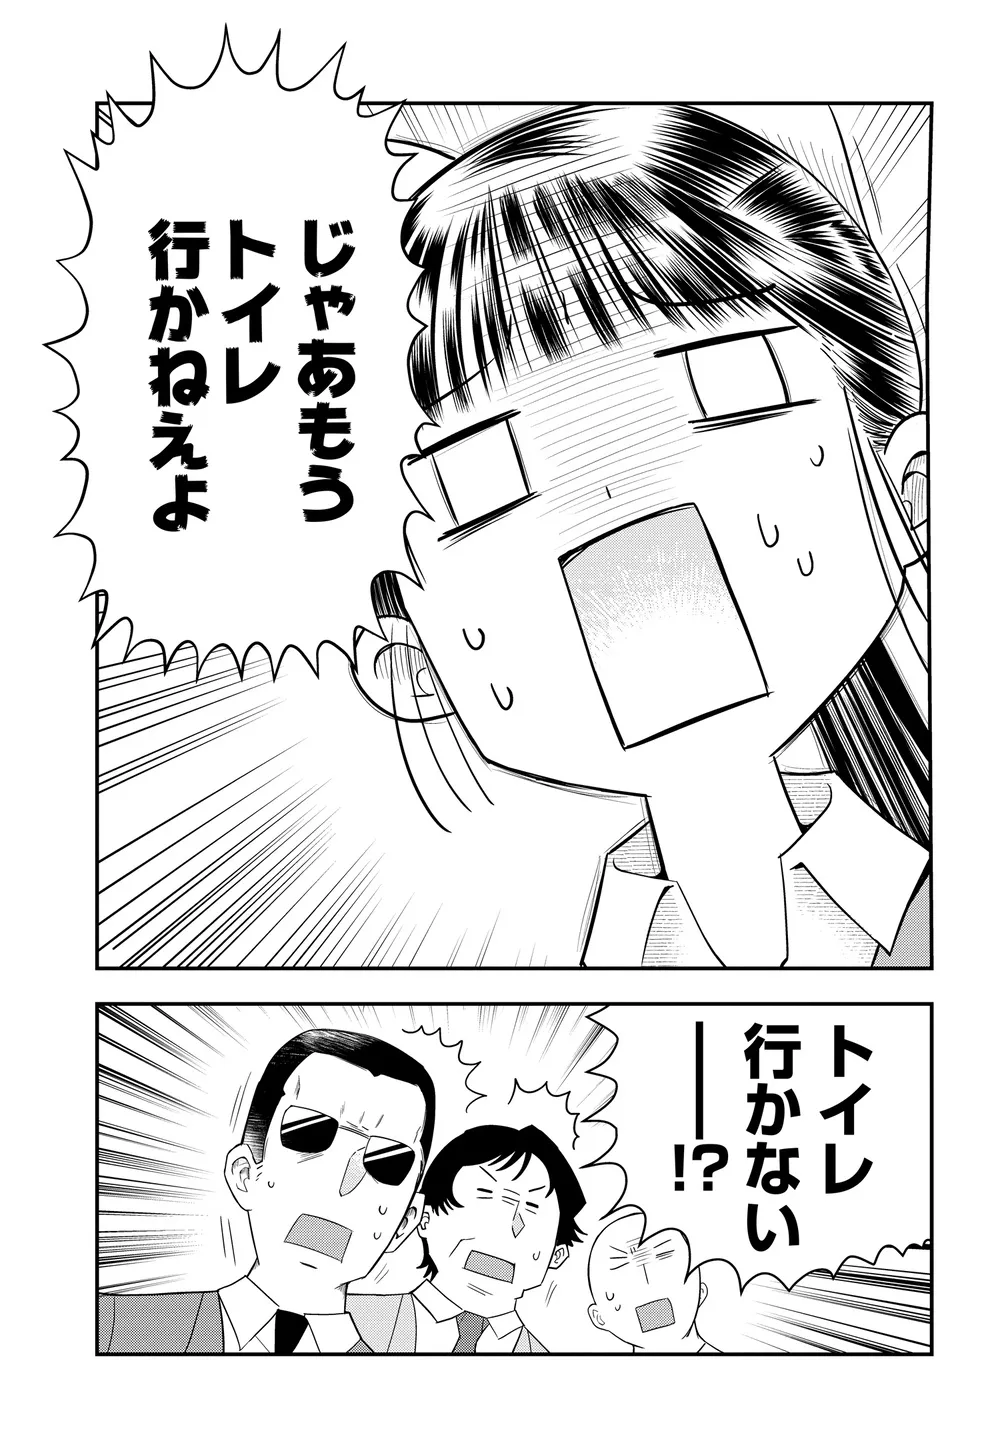 『美人すぎる女装刑事 藤堂さん』(28/39)